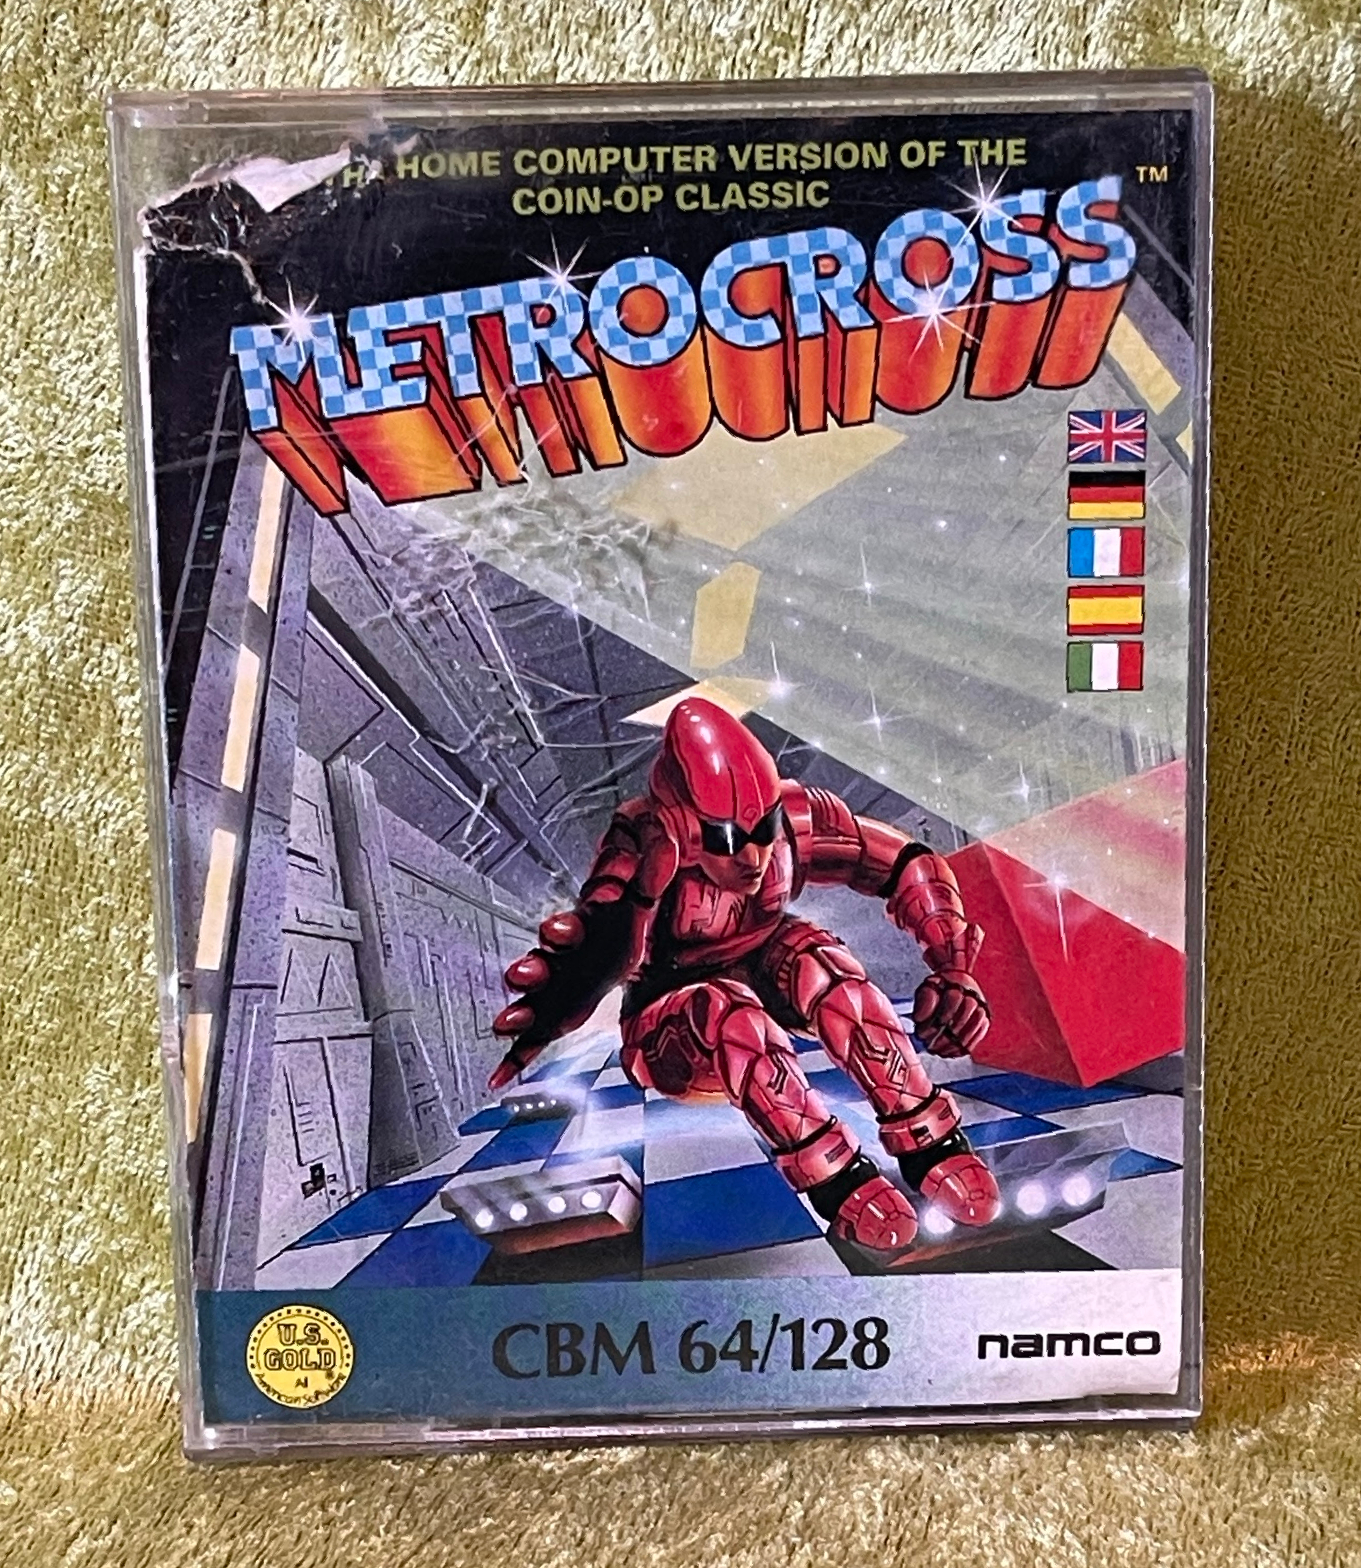 Metrocross